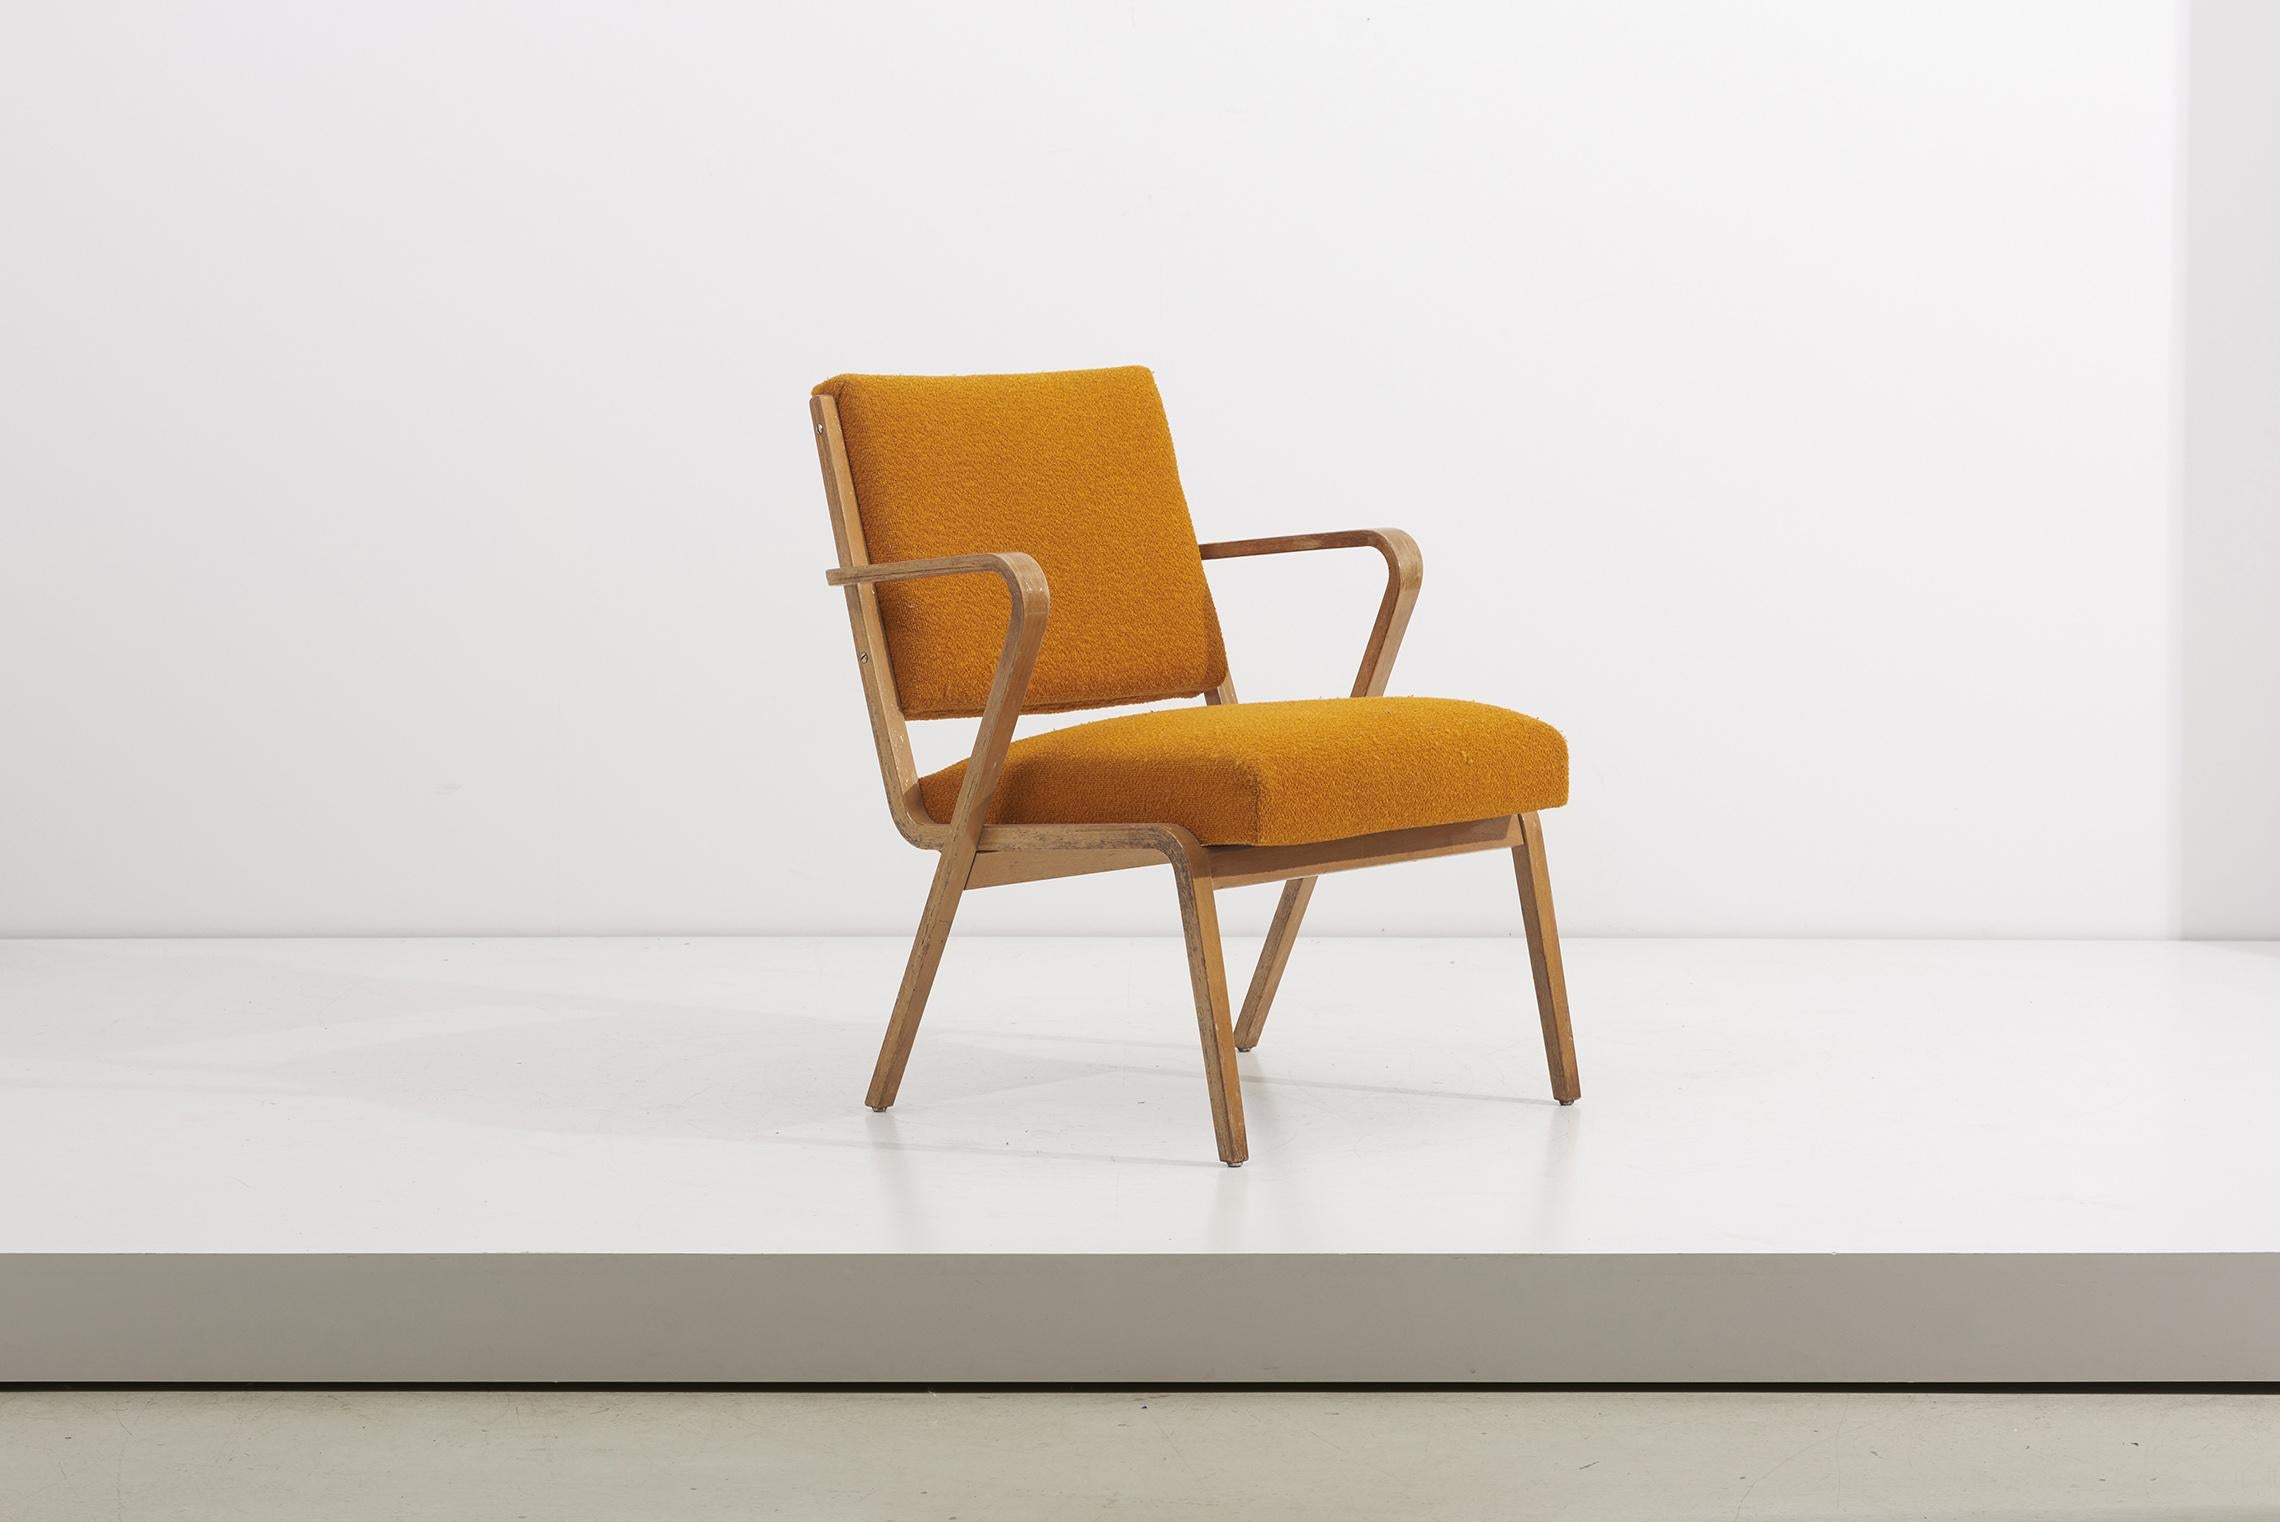 Ensemble de 2 fauteuils conçus par l'architecte Selman Selmanagic en 1957 pour le fabricant est-allemand VEB Deutsche Werkstätten Hellerau.
Bon état d'origine.